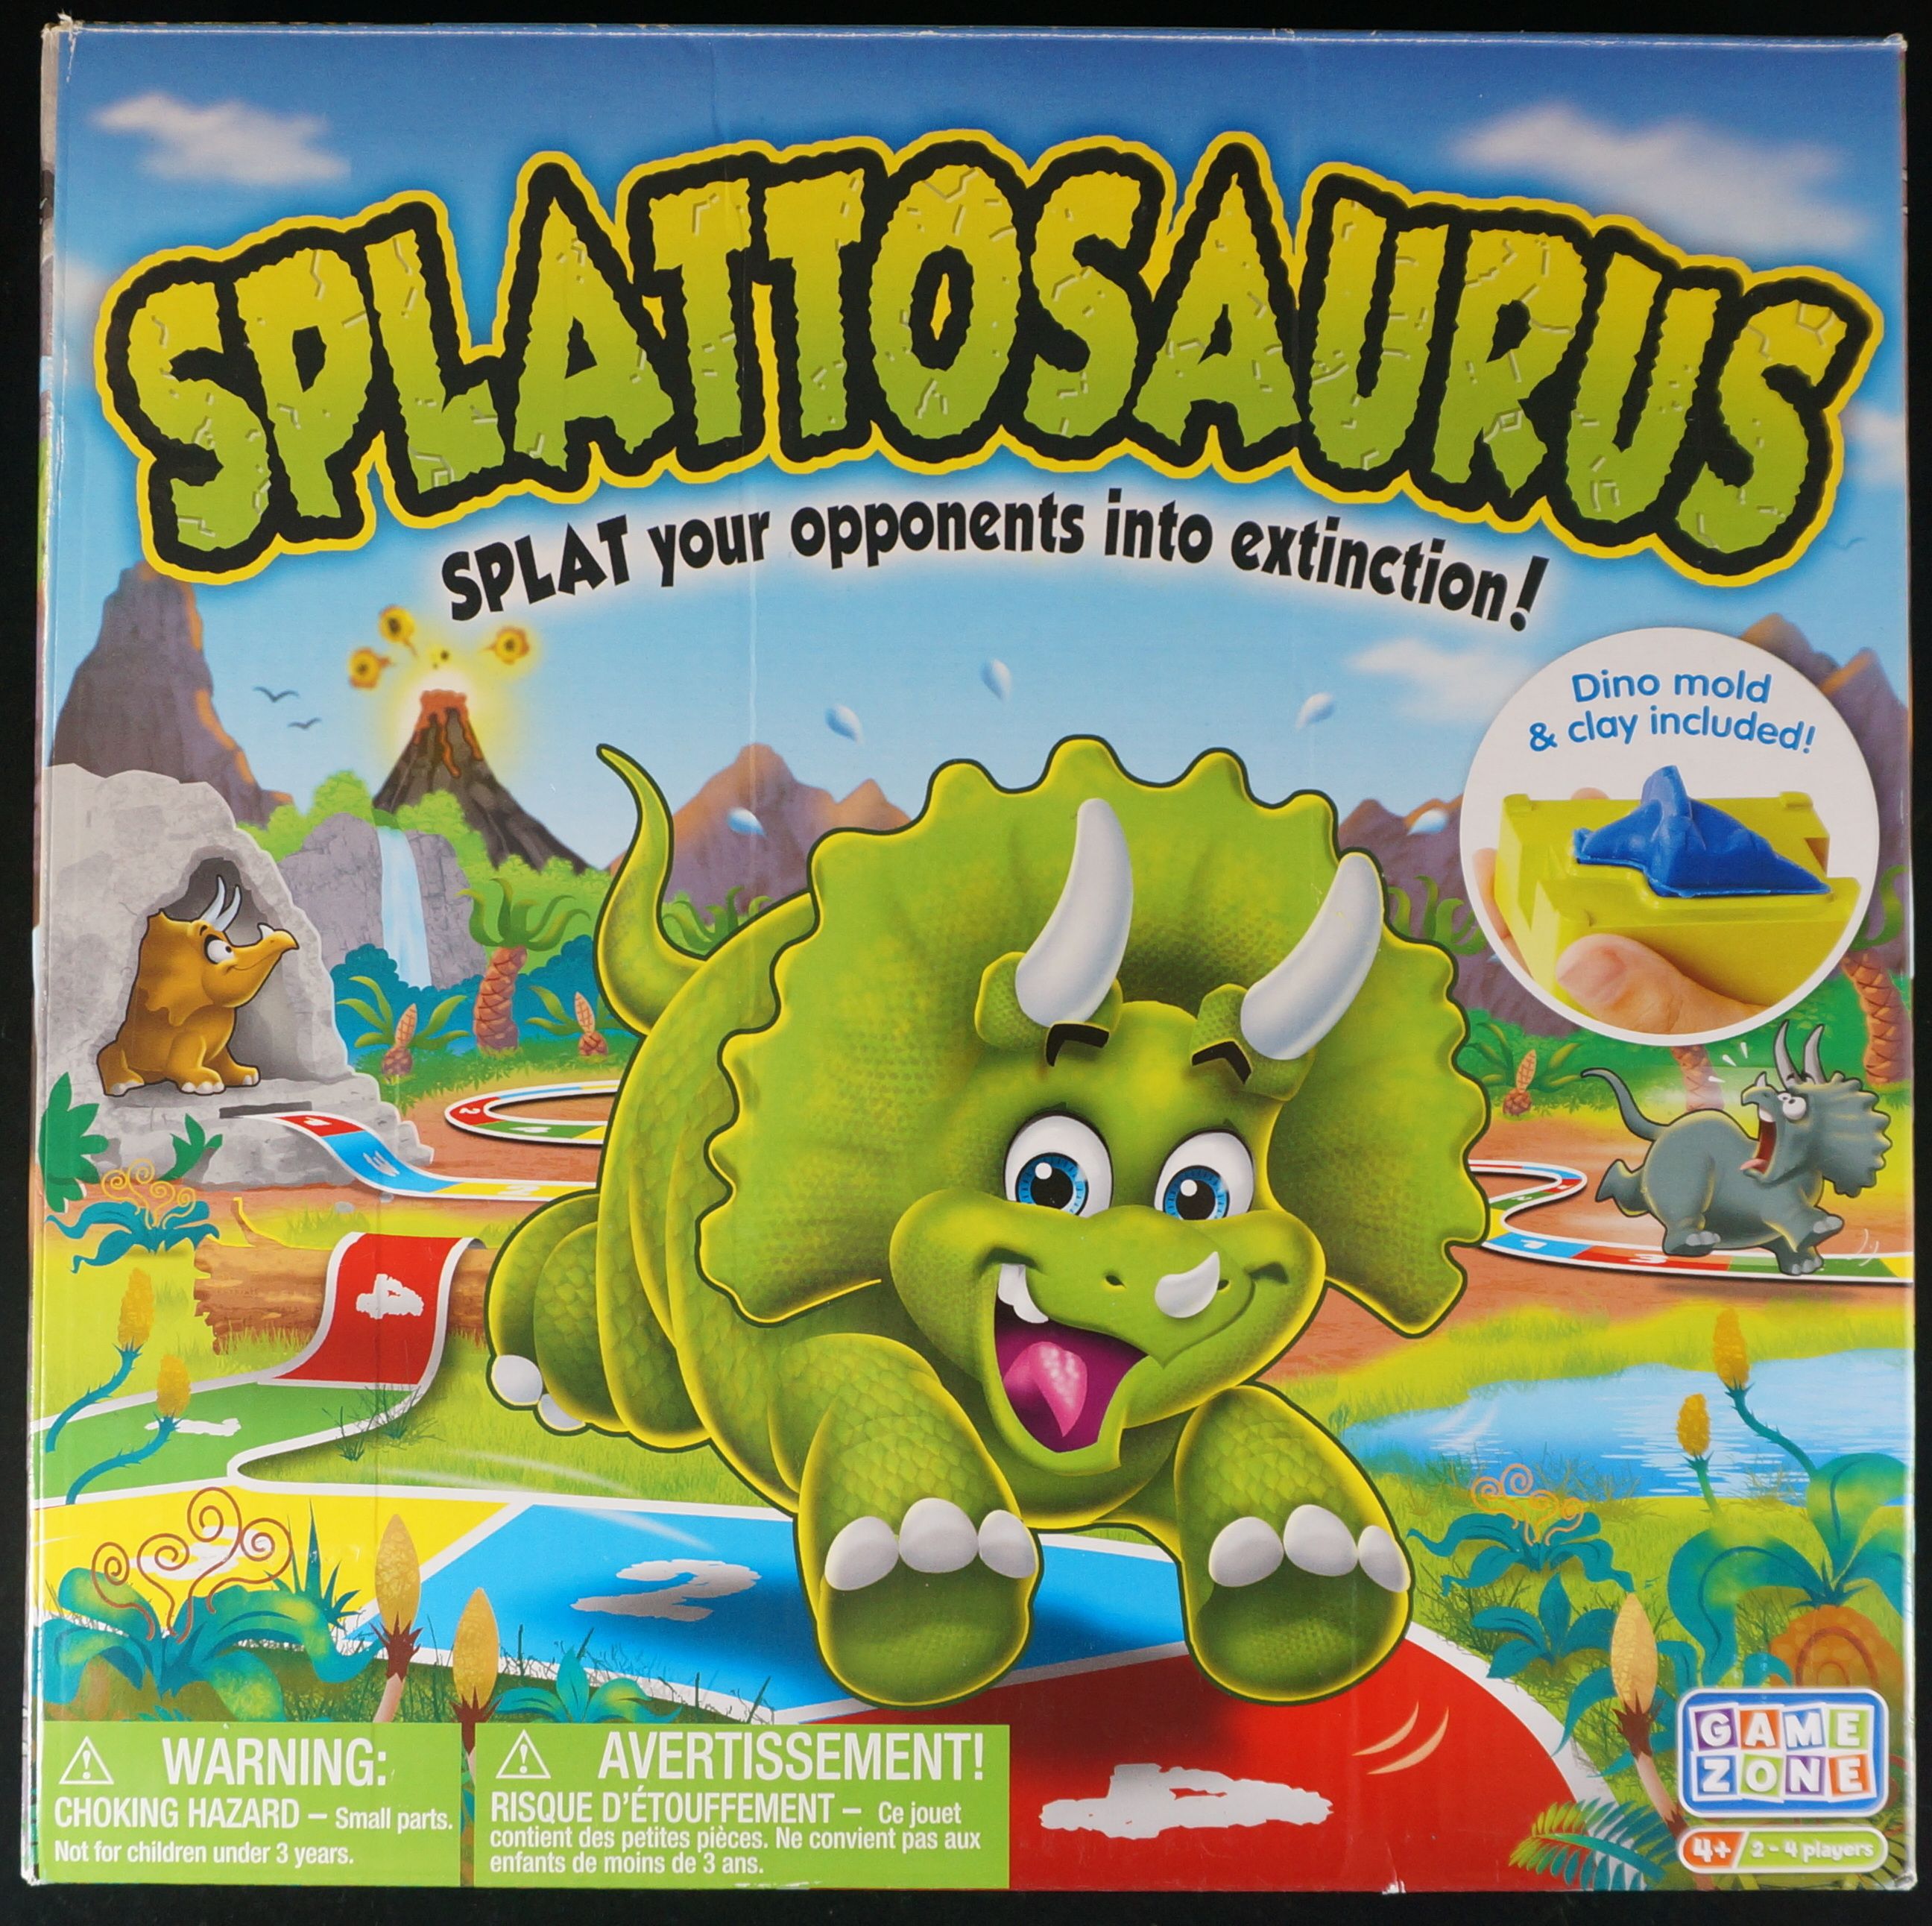 Splattosaurus